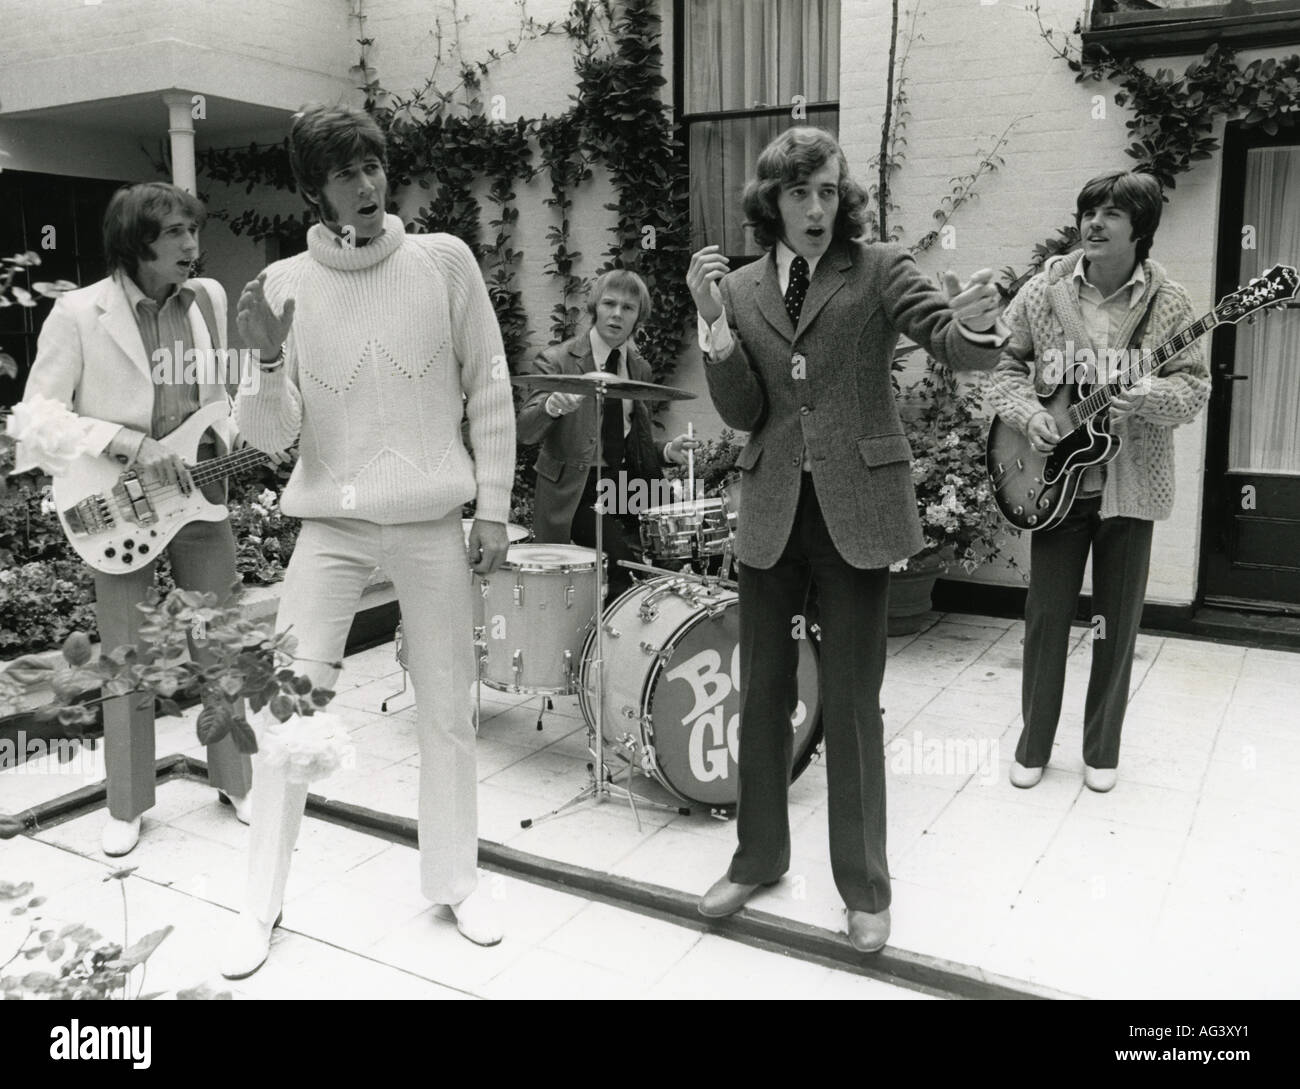 BEE GEES REGNO UNITO gruppo pop nel maggio 1968 la registrazione di un video sul tetto di abbattimento delle loro manager Robert Stigwood. Foto: Tony Gale Foto Stock